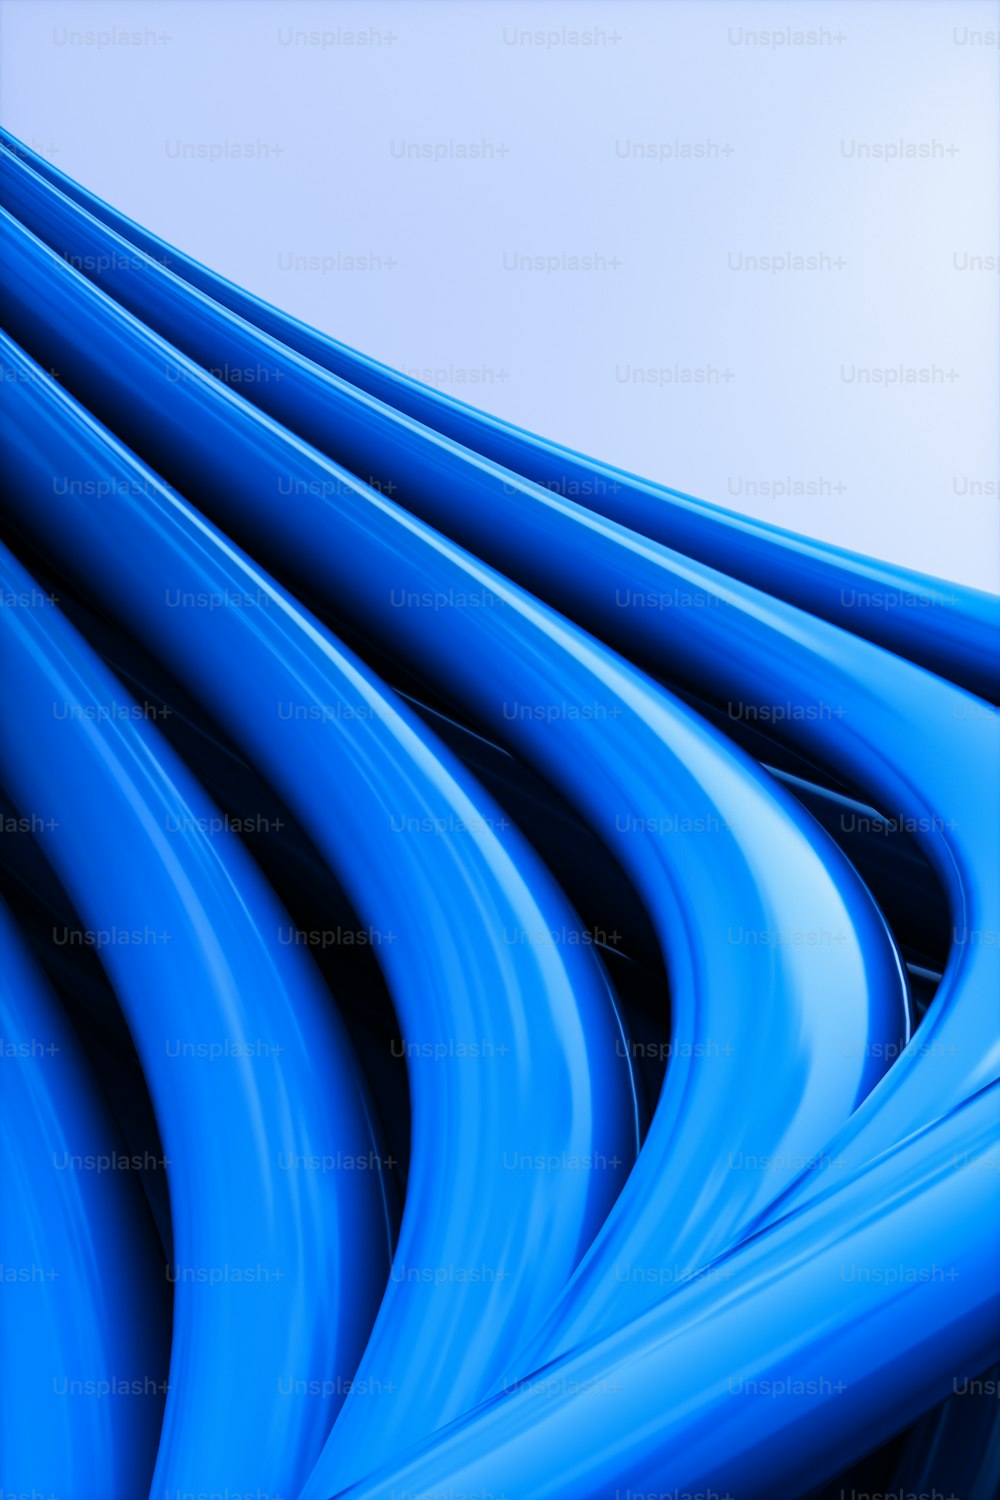 une image d’un fond bleu avec des lignes ondulées